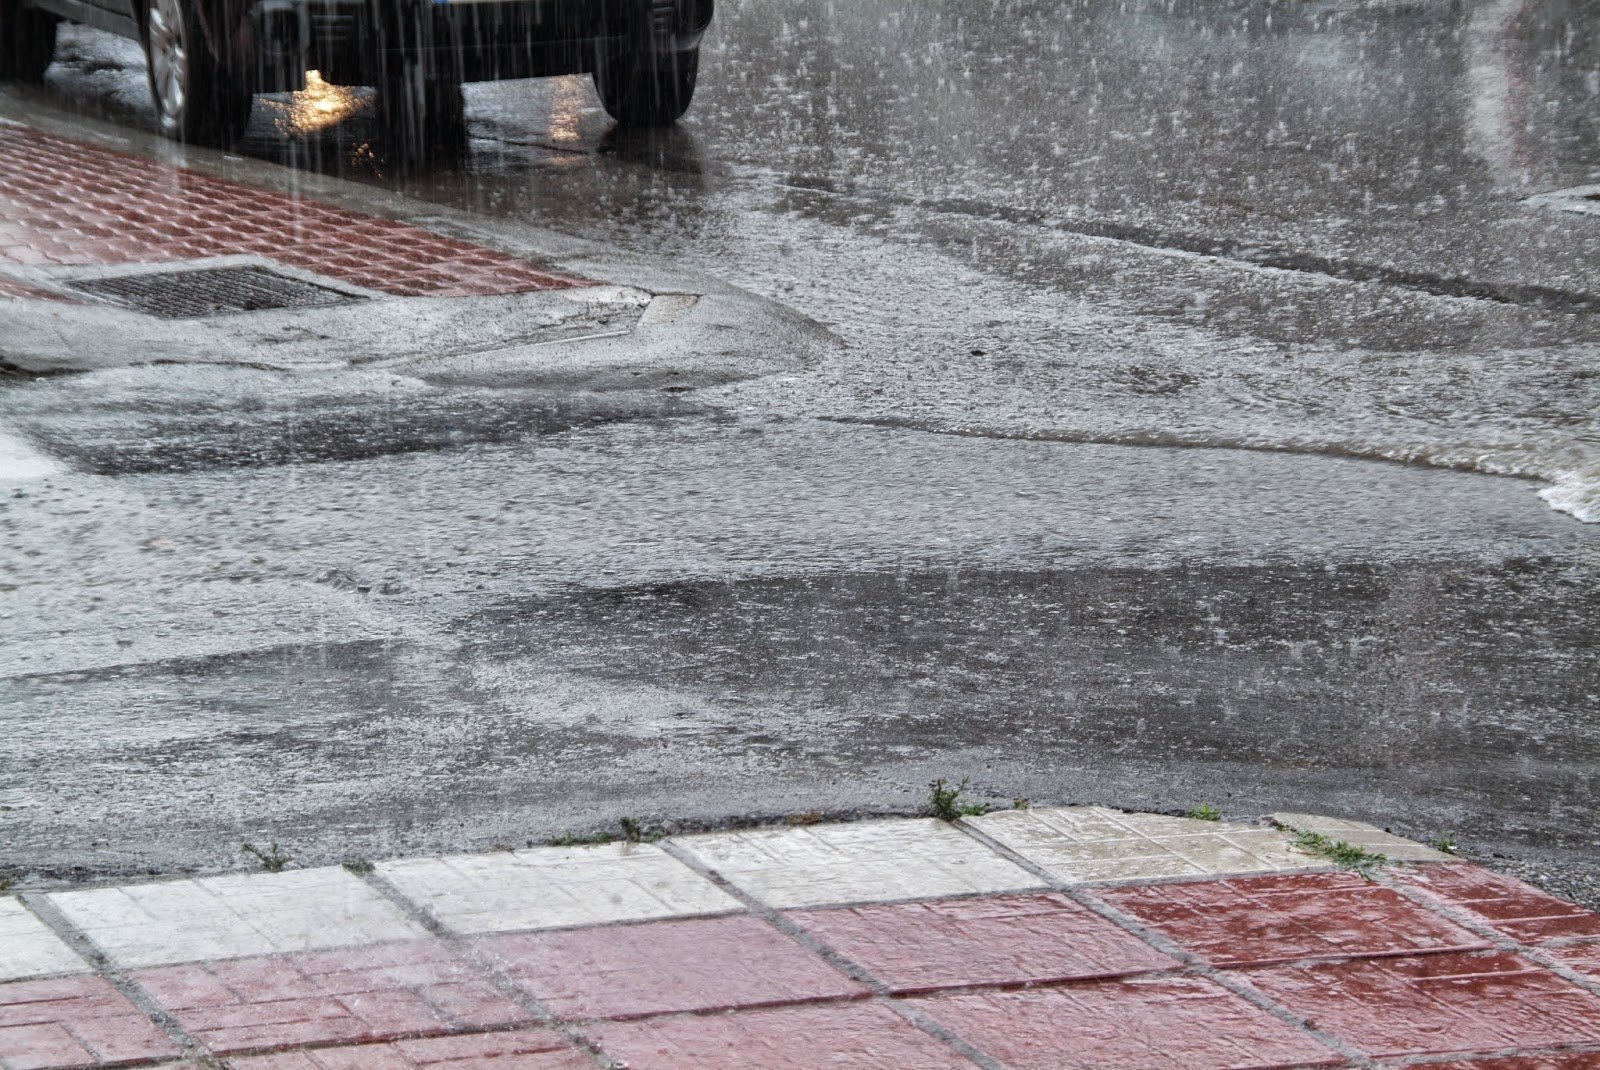 Κυκλοφοριακή συμφόρηση στους δρόμους λόγω βροχής